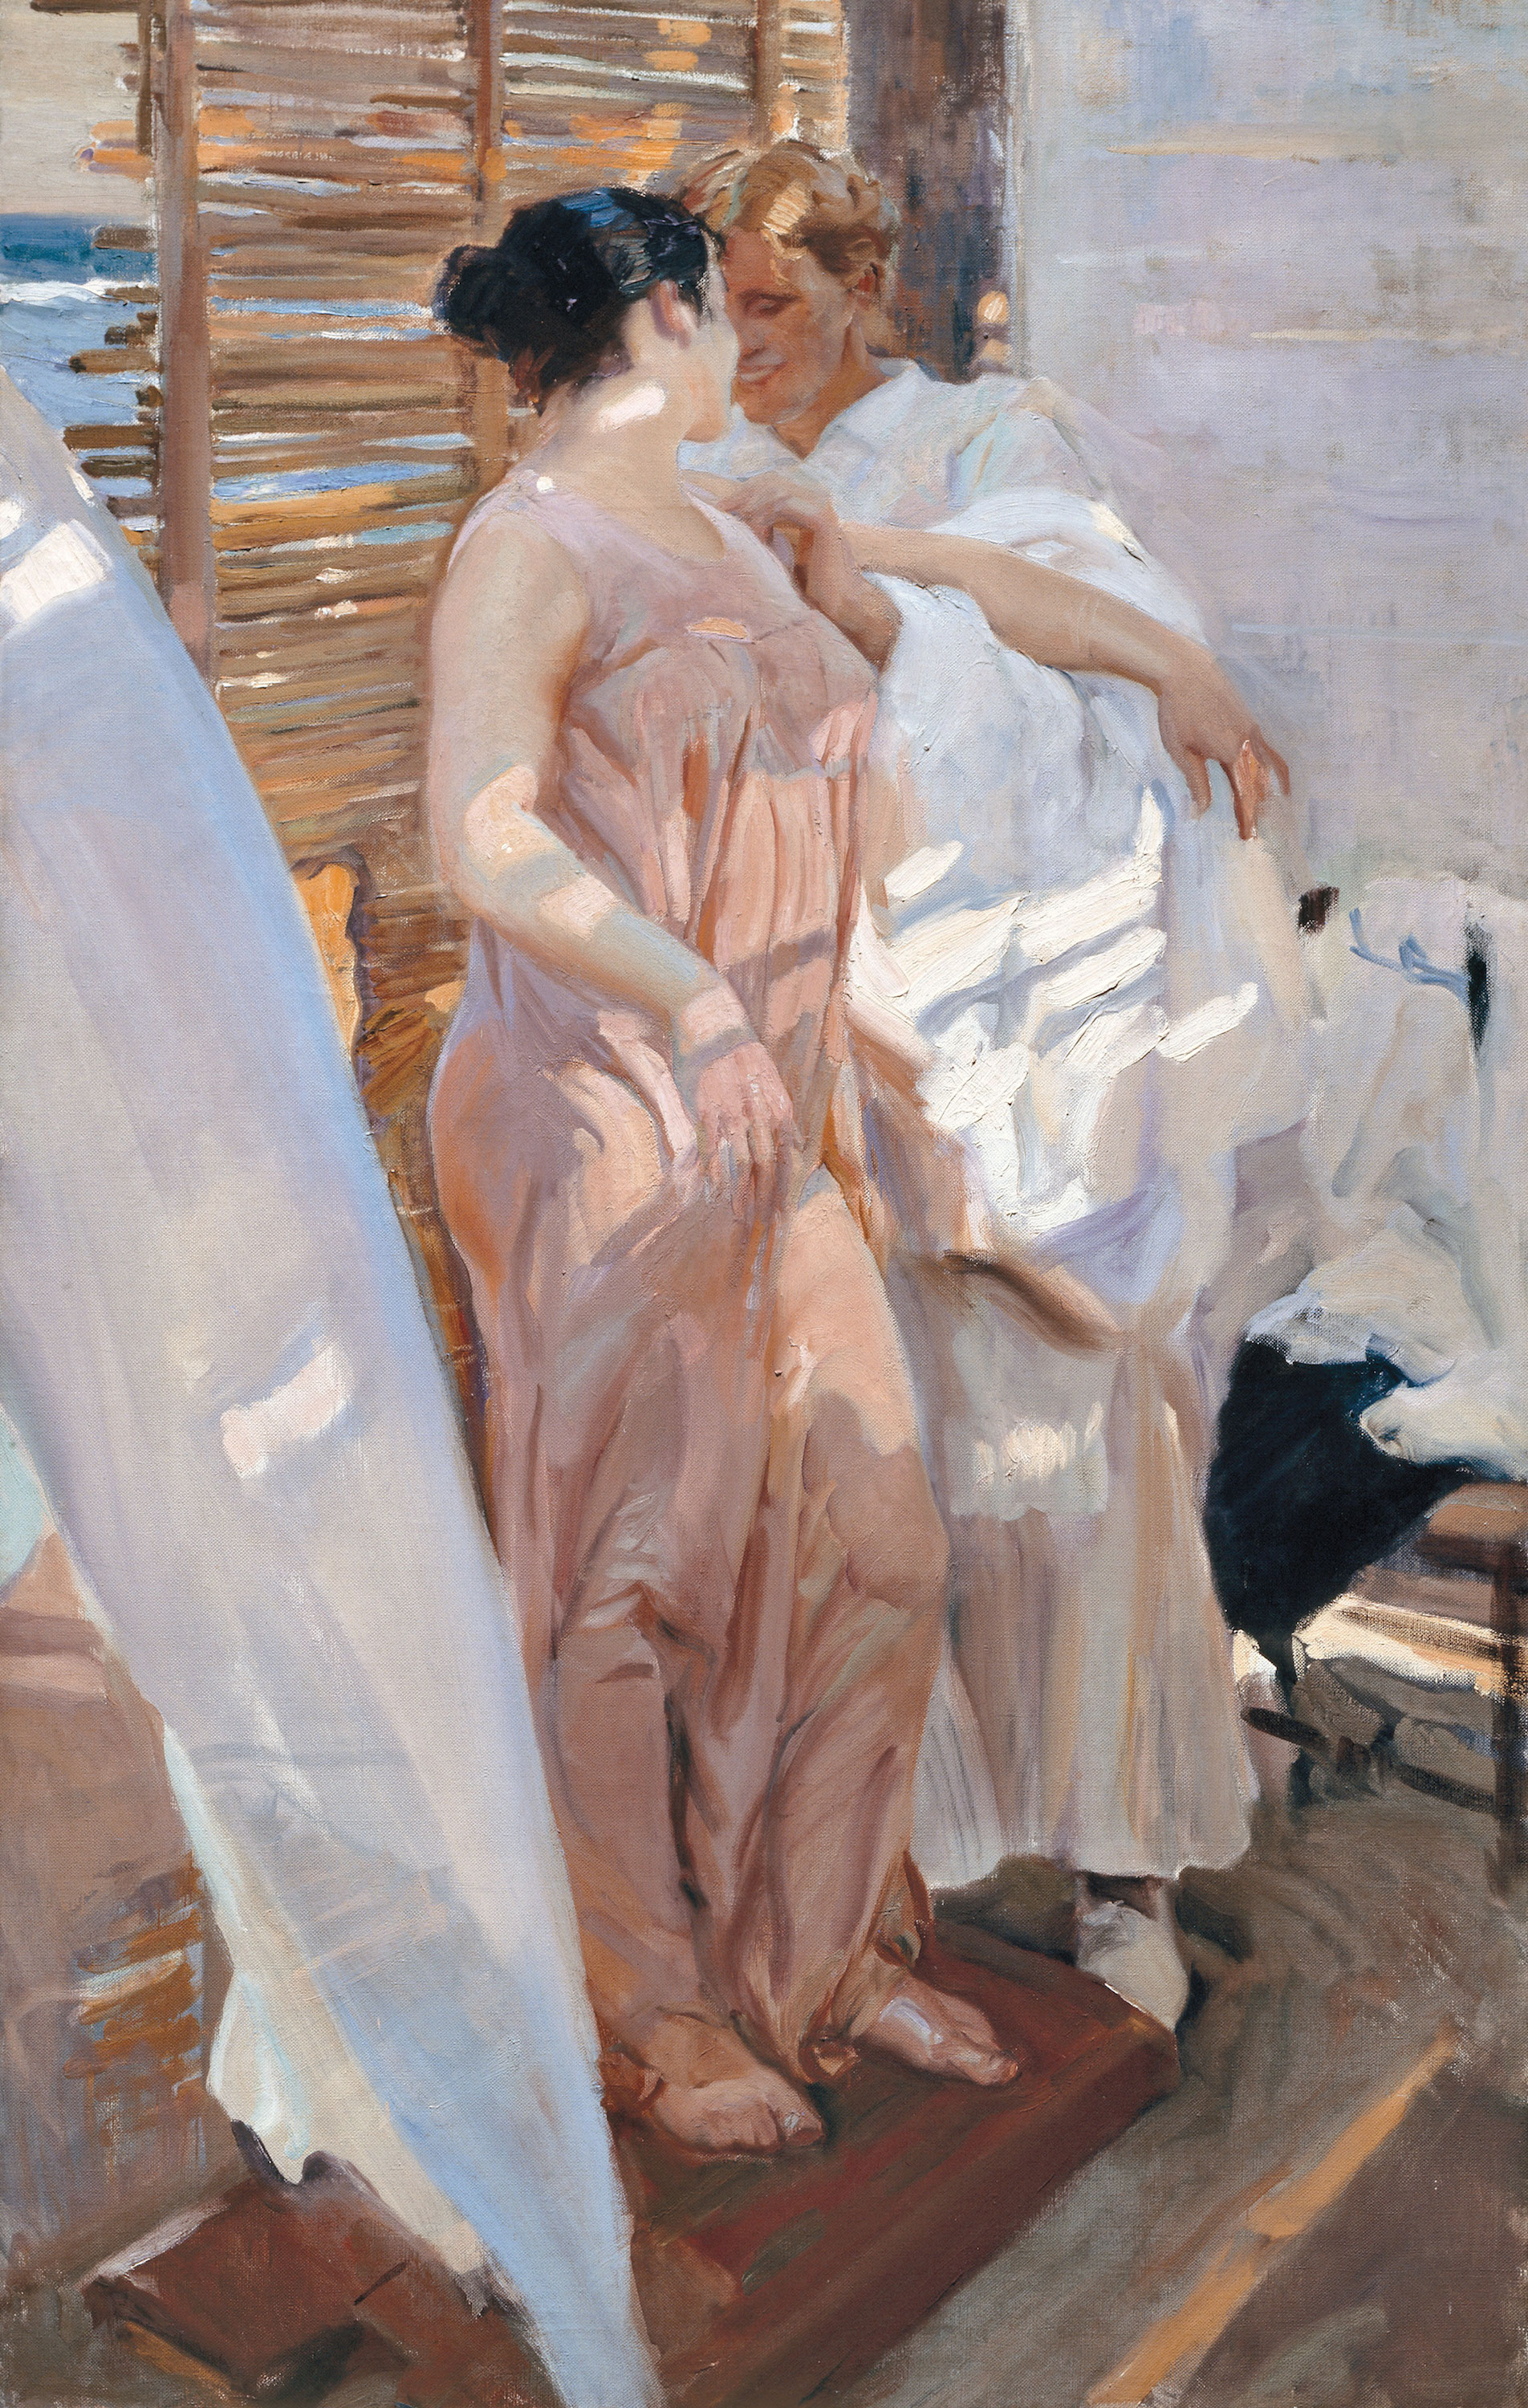 Banyodan Sonra veya Pembe Bornoz by Joaquín Sorolla - 1916 - 208 x 126.5 cm 